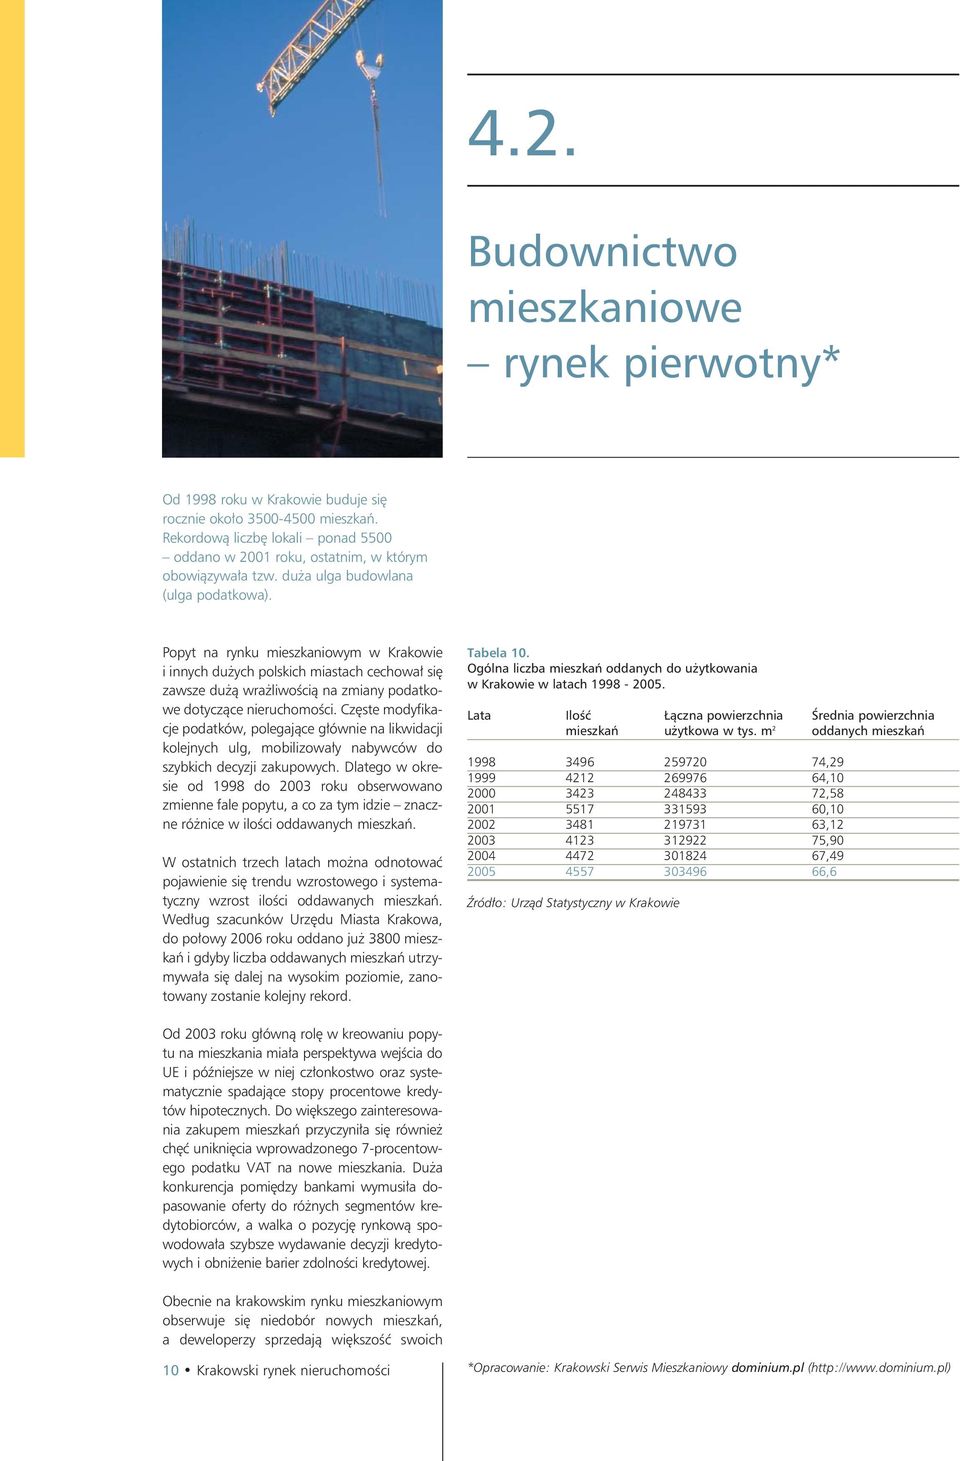 Popyt na rynku mieszkaniowym w Krakowie i innych dużych polskich miastach cechował się zawsze dużą wrażliwością na zmiany podatkowe dotyczące nieruchomości.